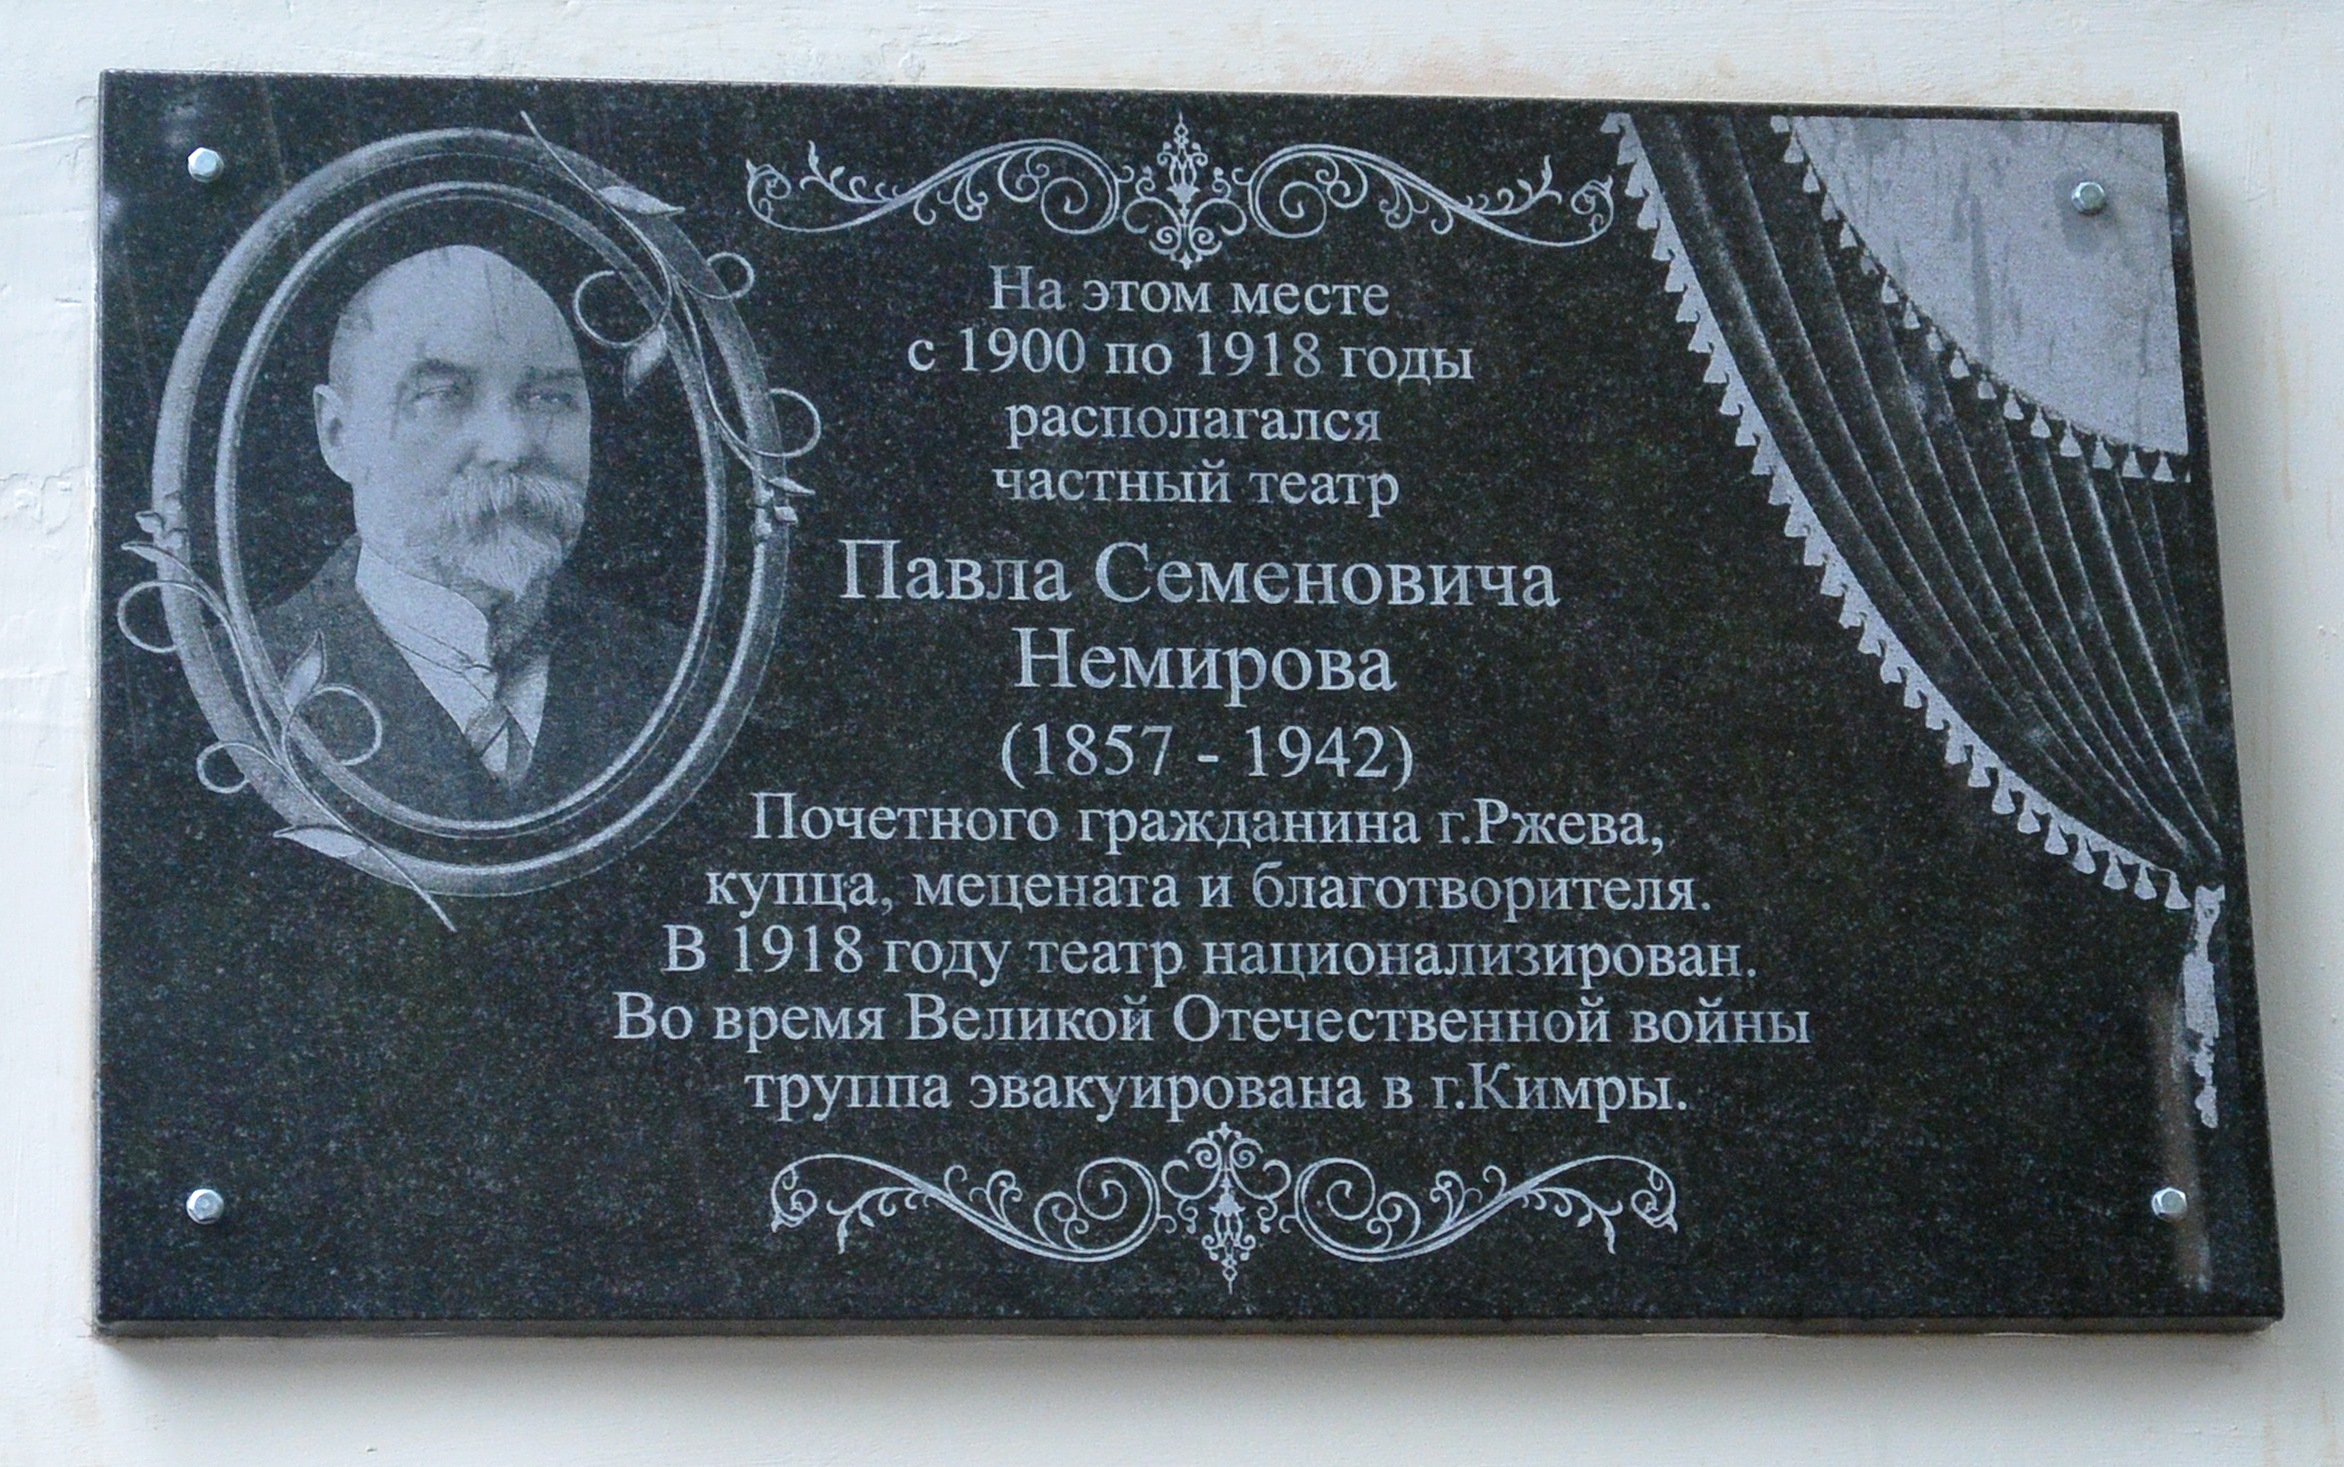 Мемориальная доска меценату П.С. Немирову